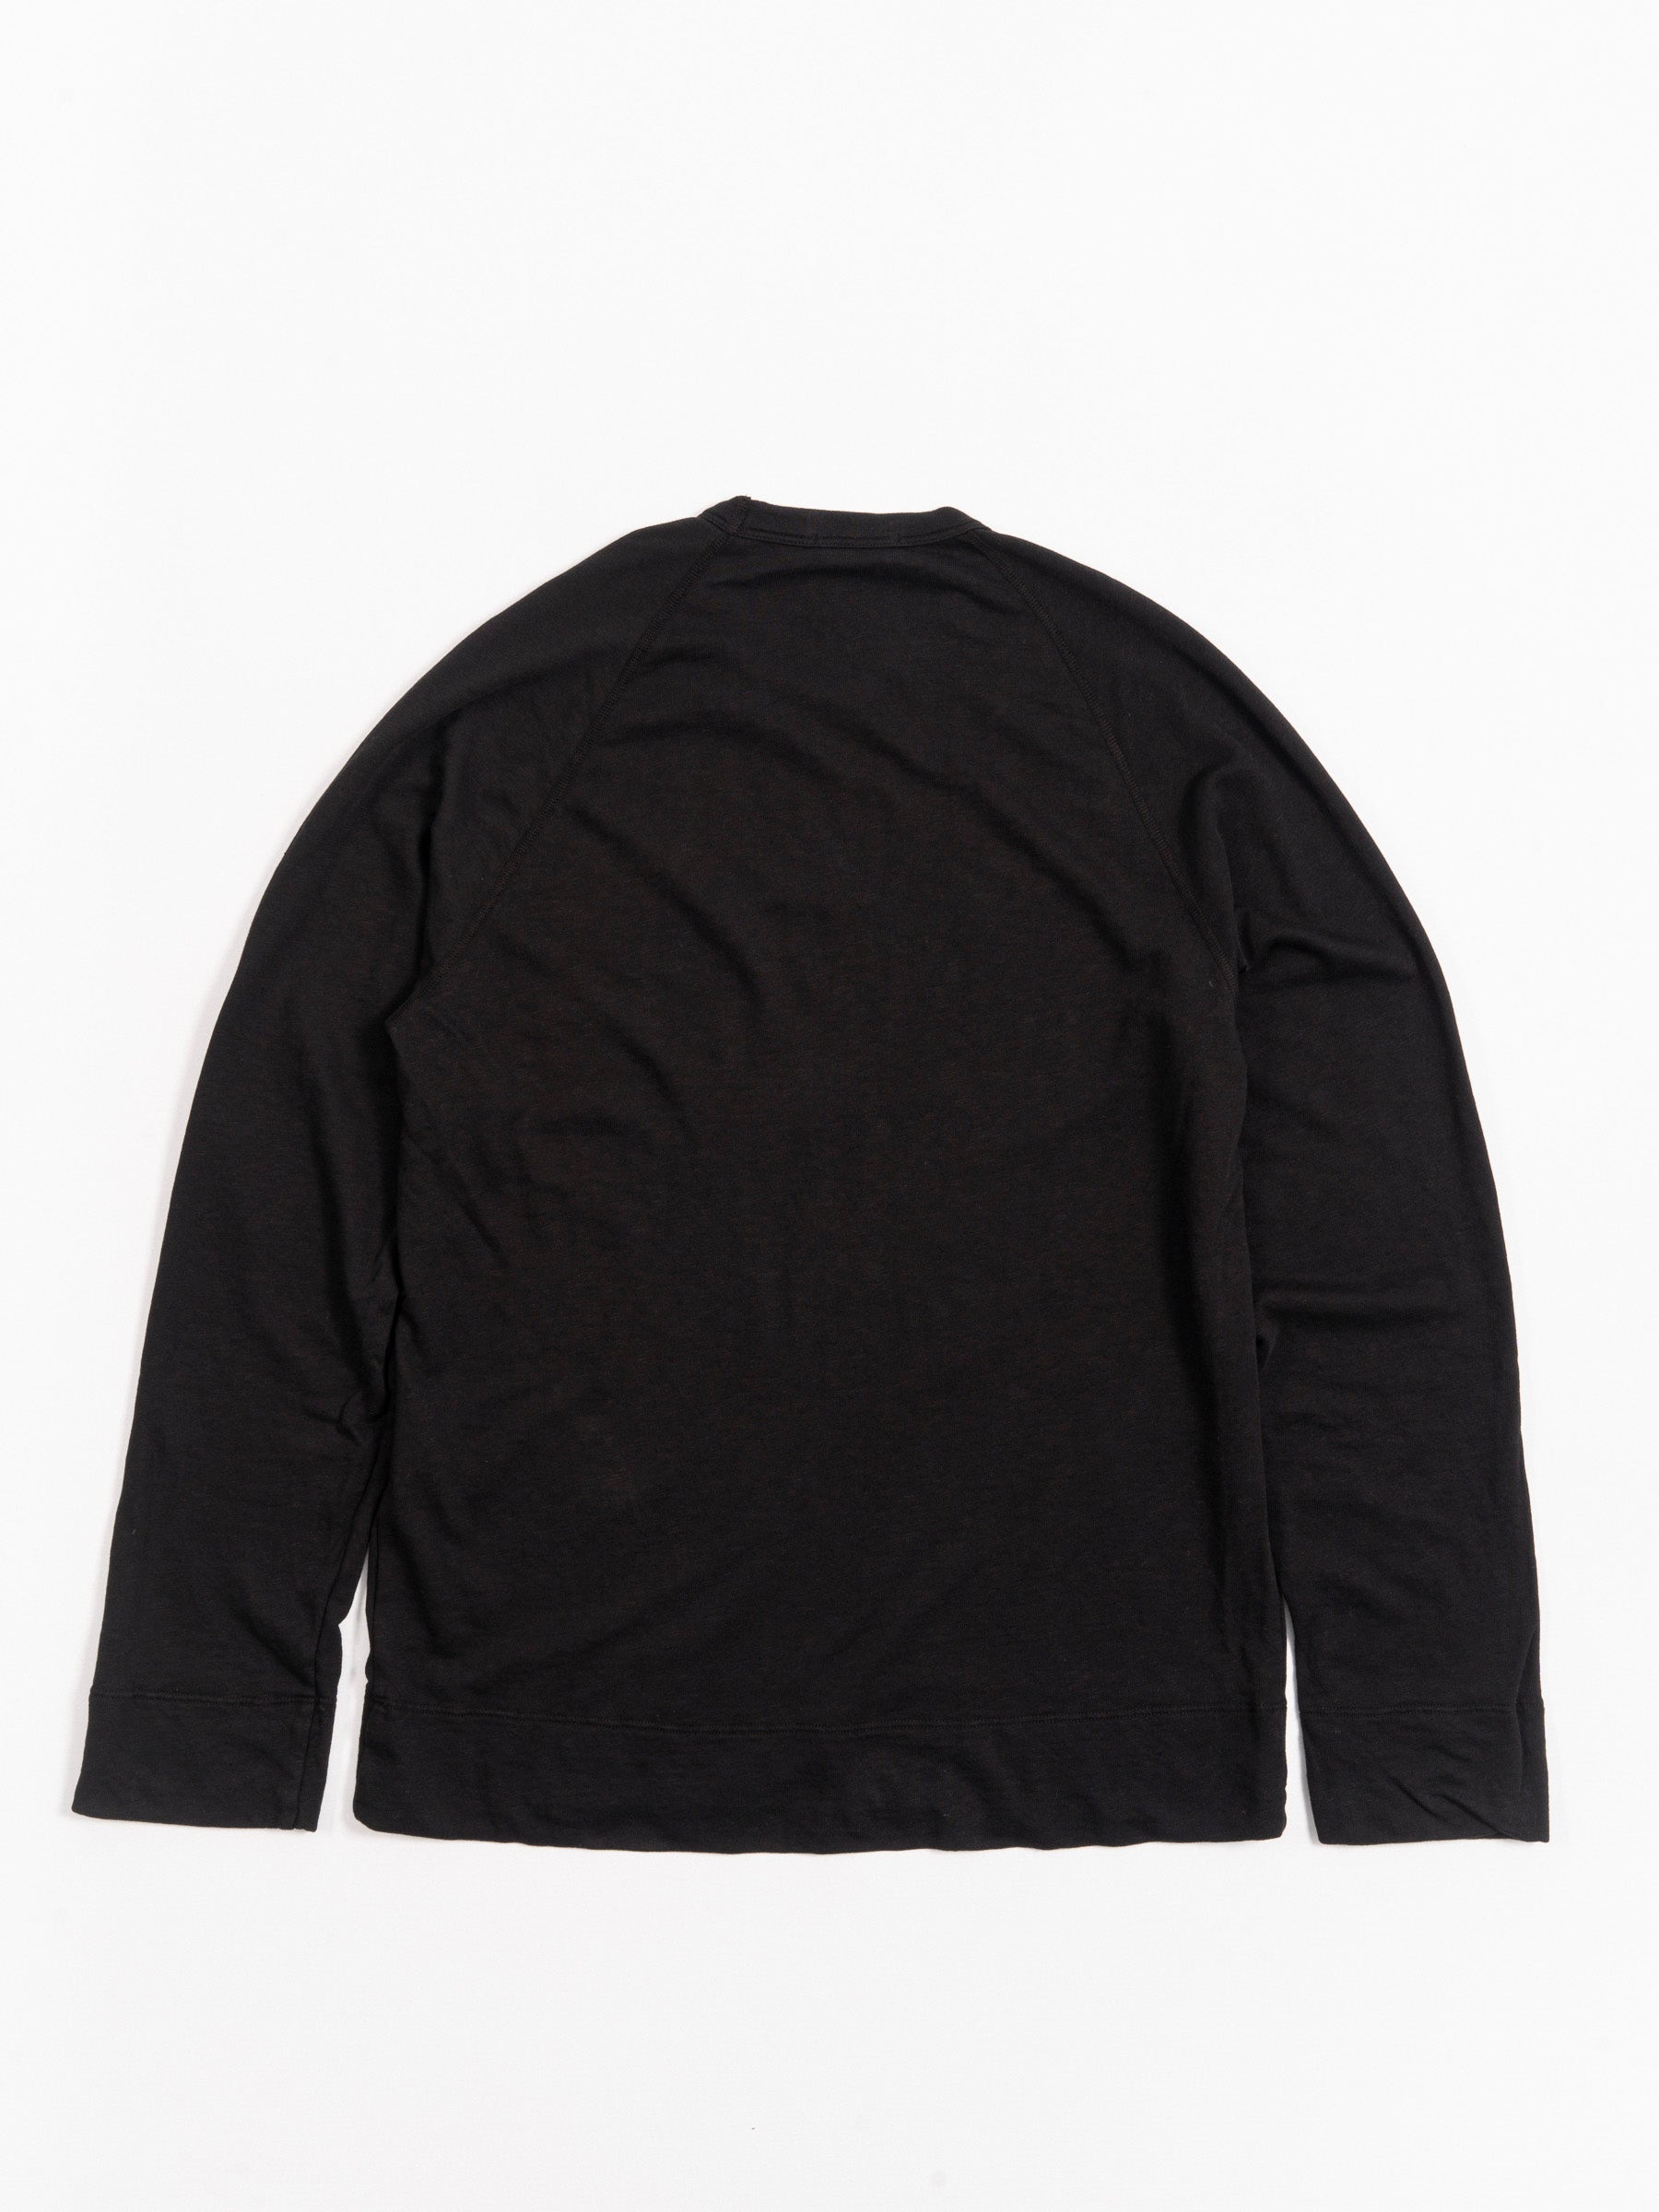 Vintage Sweatshirt Black